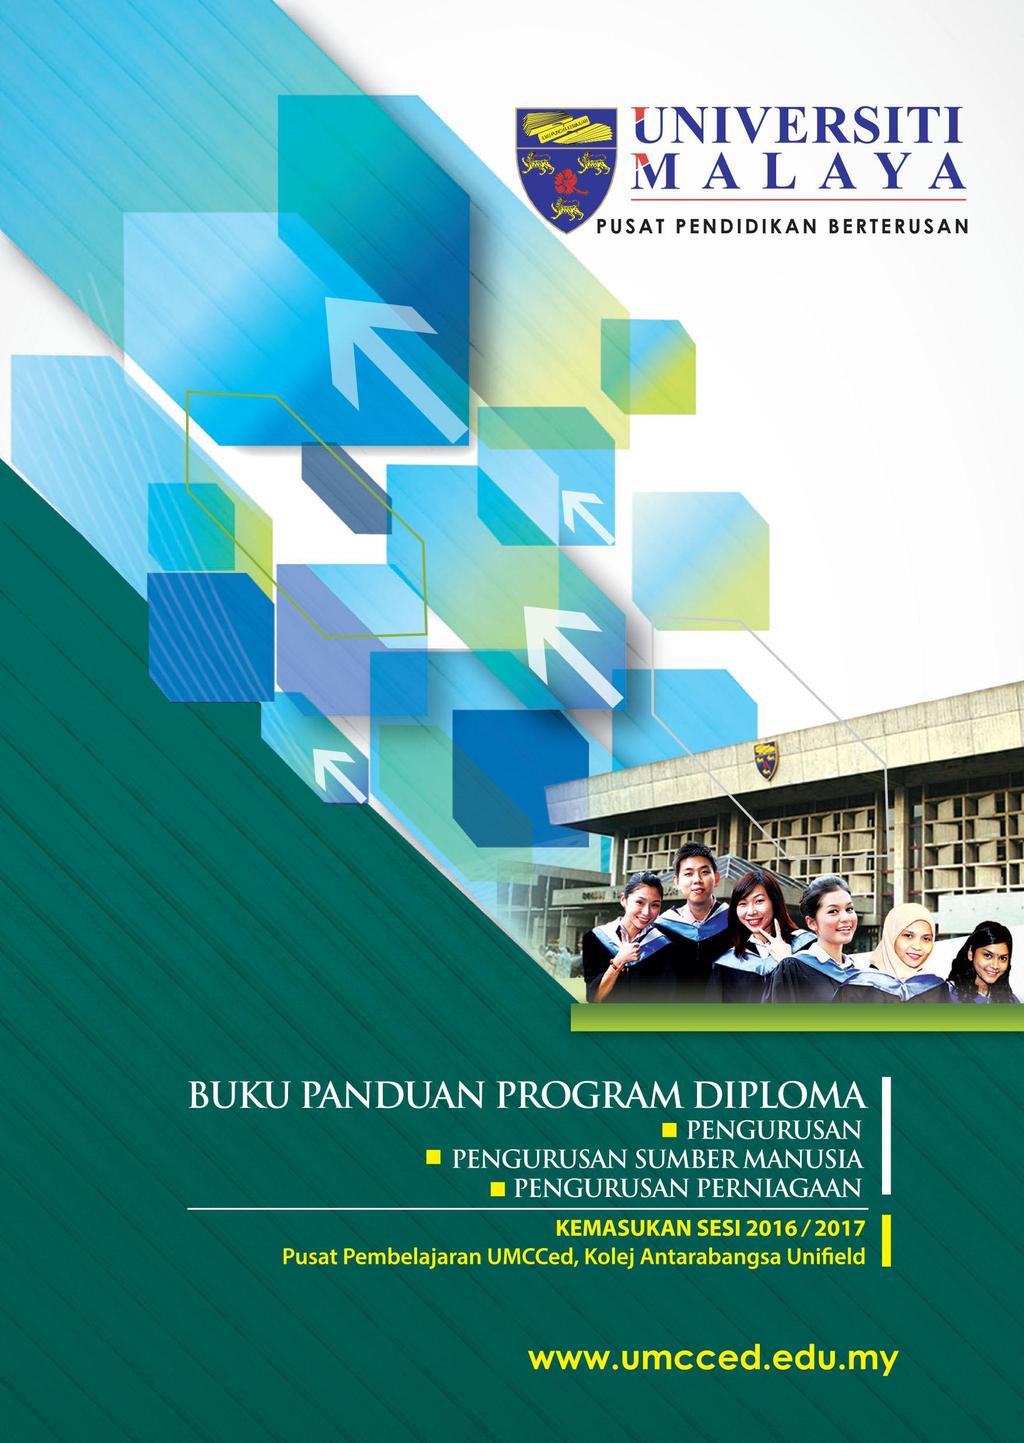 Buku Panduan Program Diploma Pengurusan Diploma Pengurusan Sumber Manusia Diploma Pengurusan Perniagaan Pdf Download Grátis